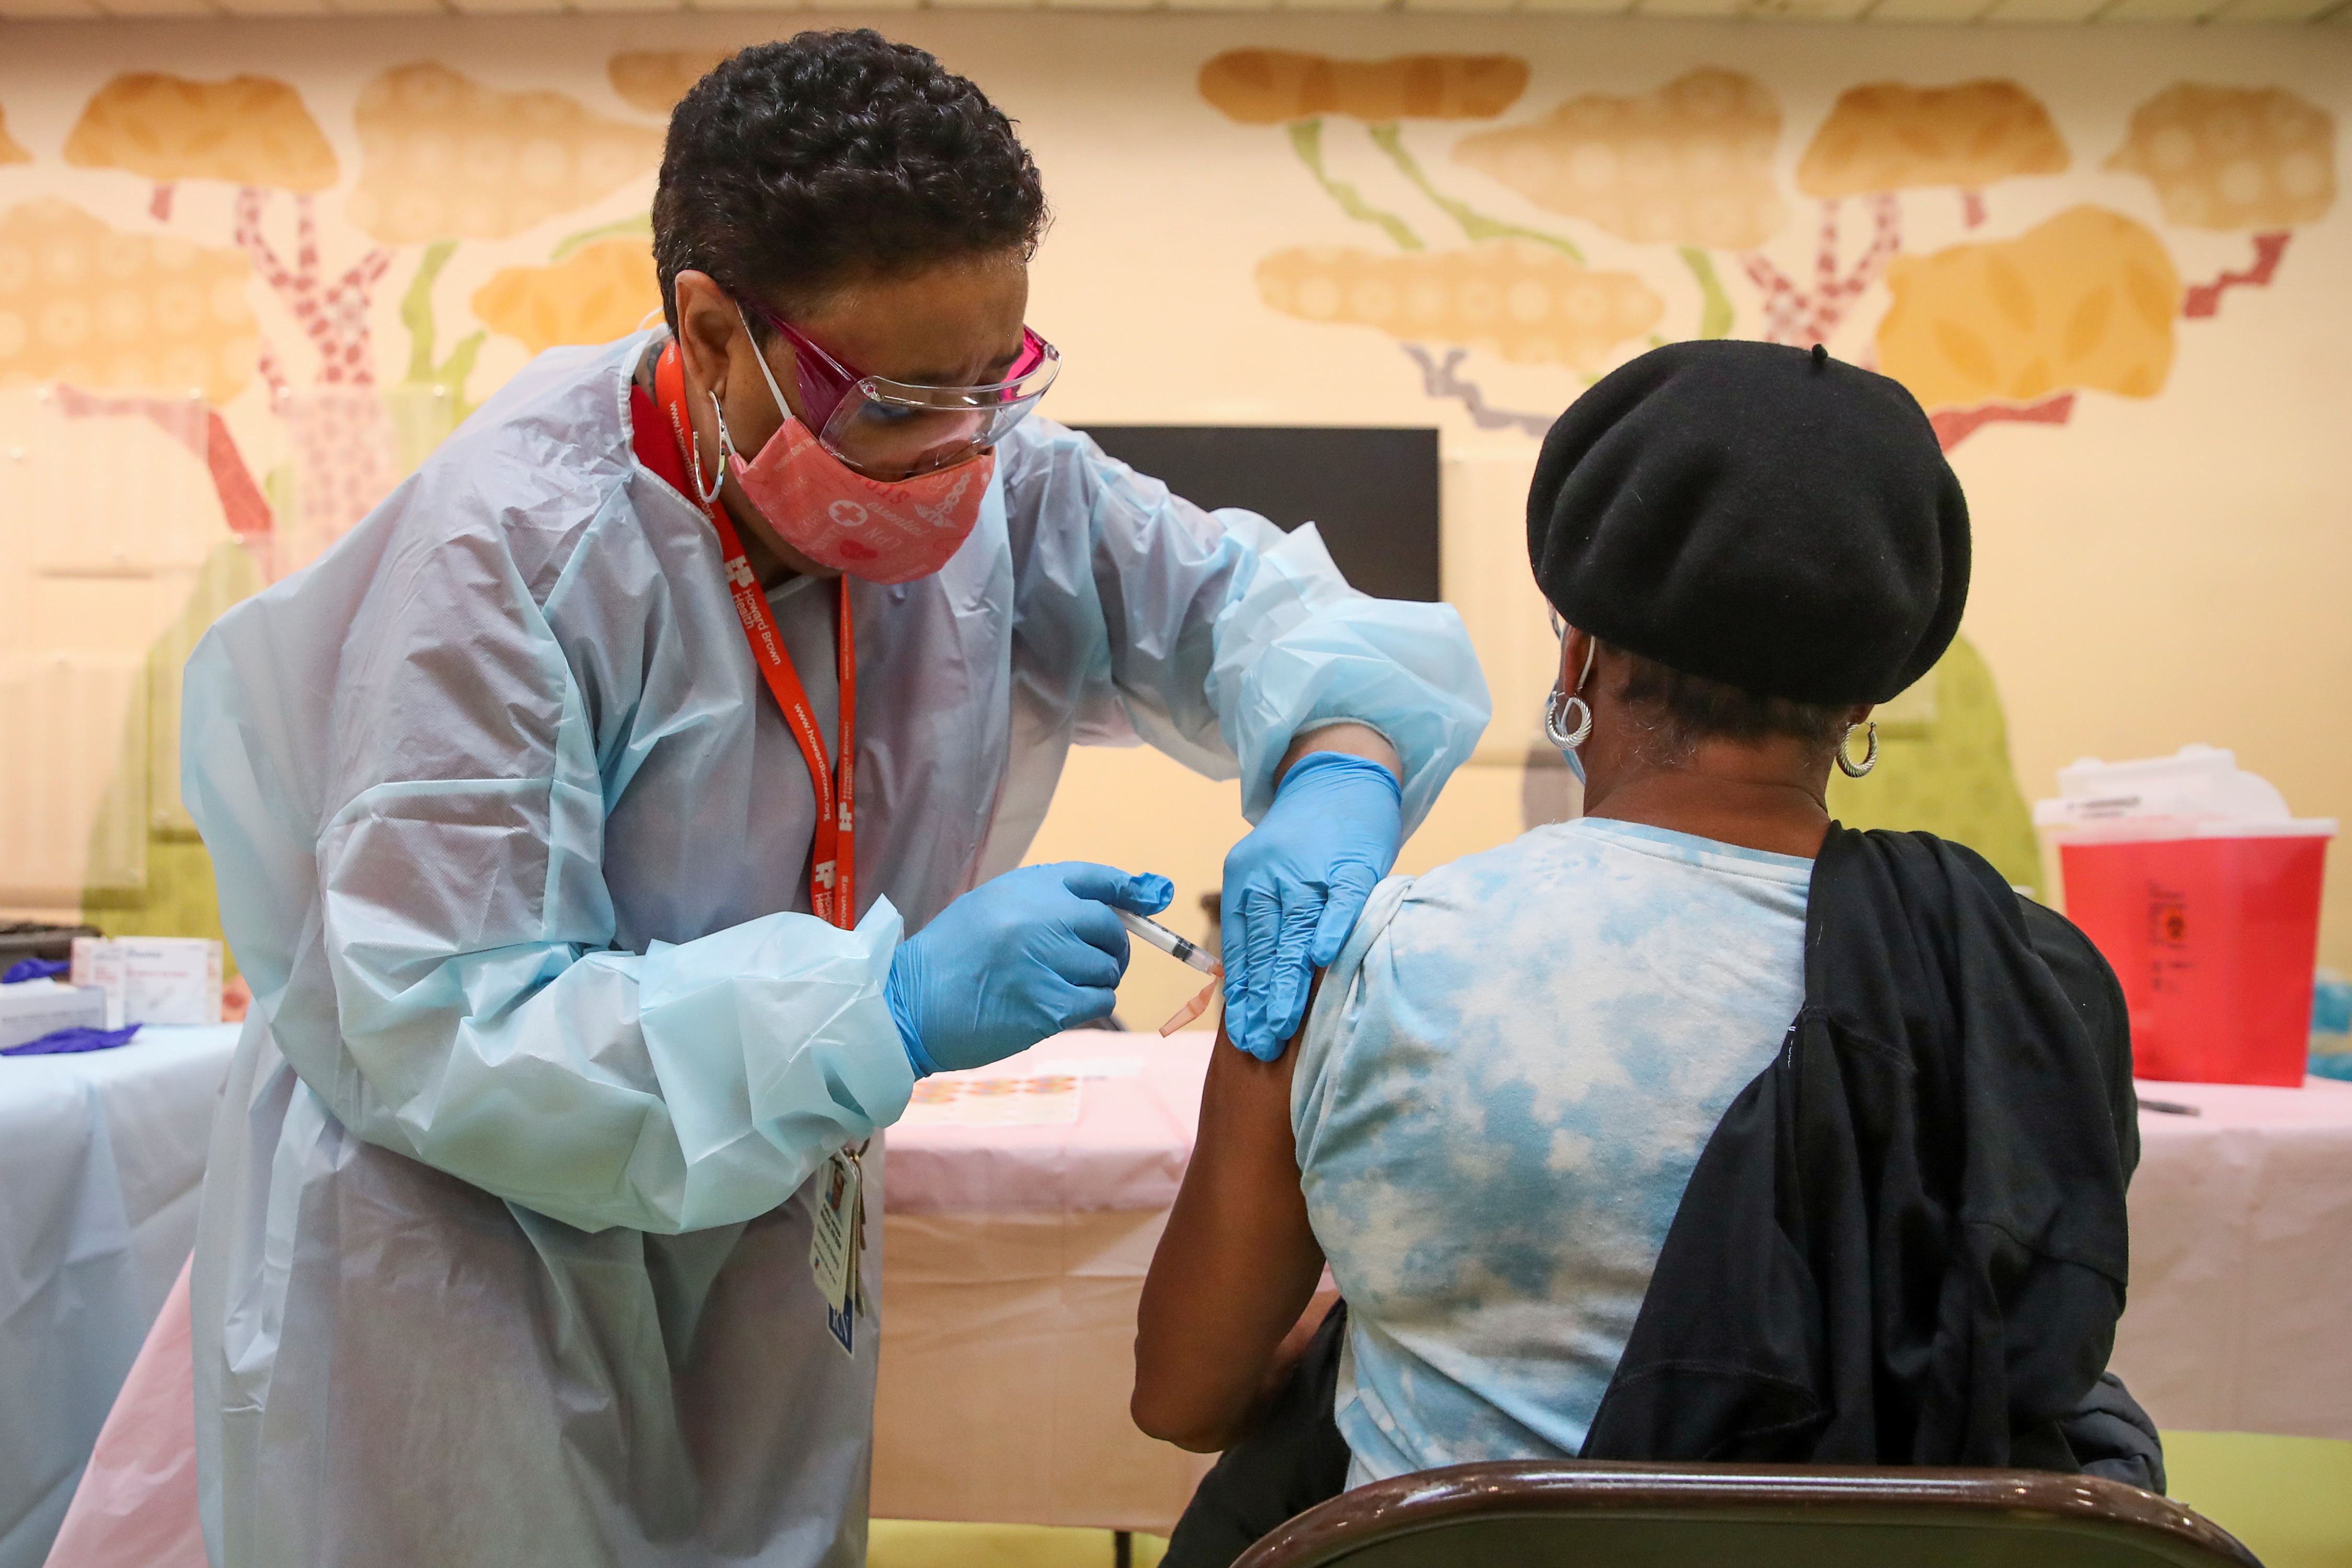 Una mujer recibe la vacuna contra la enfermedad del coronavirus Moderna (COVID-19) de manos de la enfermera Kathy McLoyd (L) en la Iglesia Unida de Cristo de la Trinidad en Chicago, Illinois, Estados Unidos, el 13 de febrero de 2021.  REUTERS/Kamil Krzaczynski